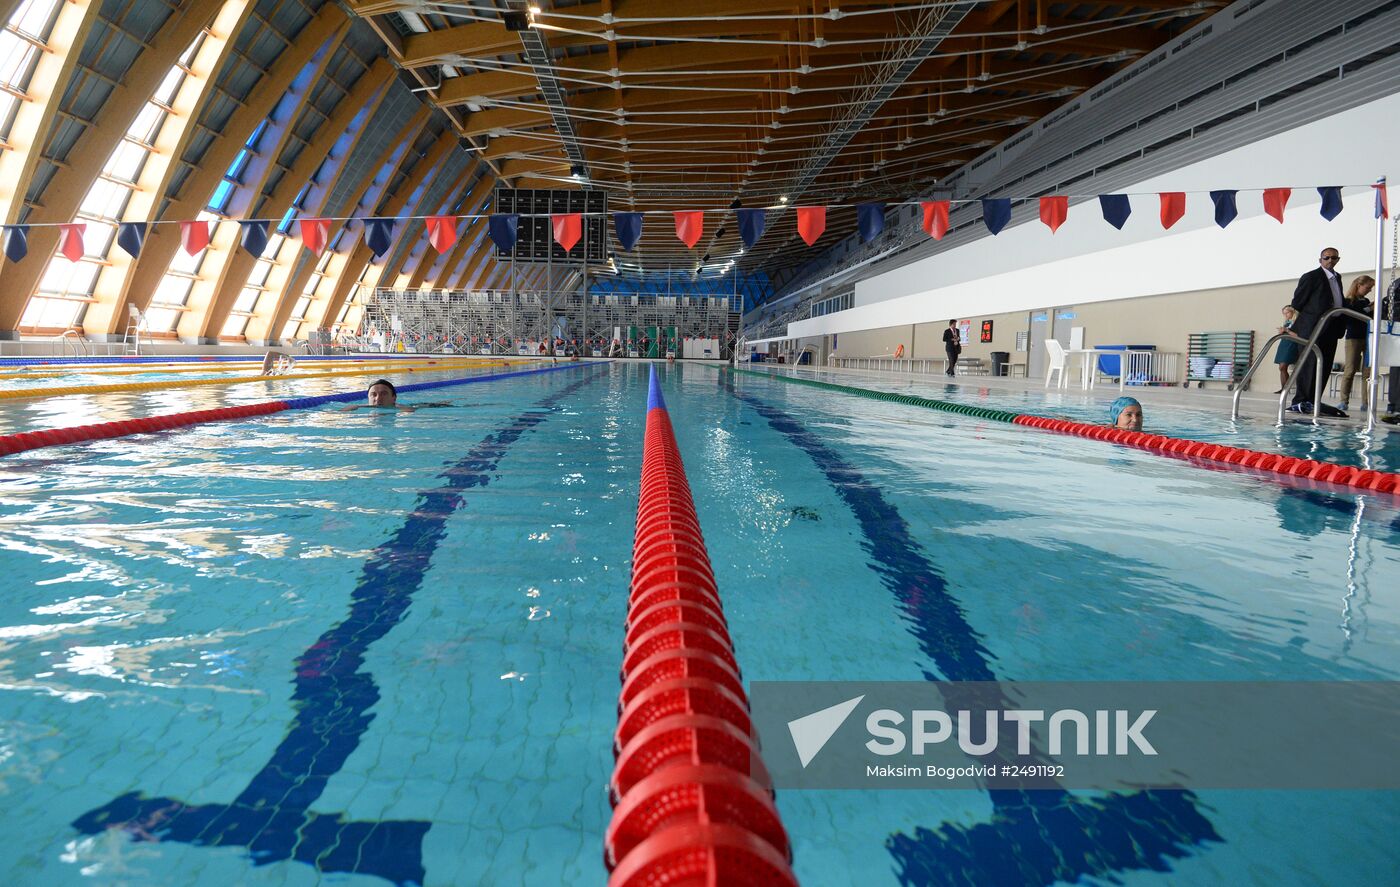 2015 World Aquatics Championships facilities